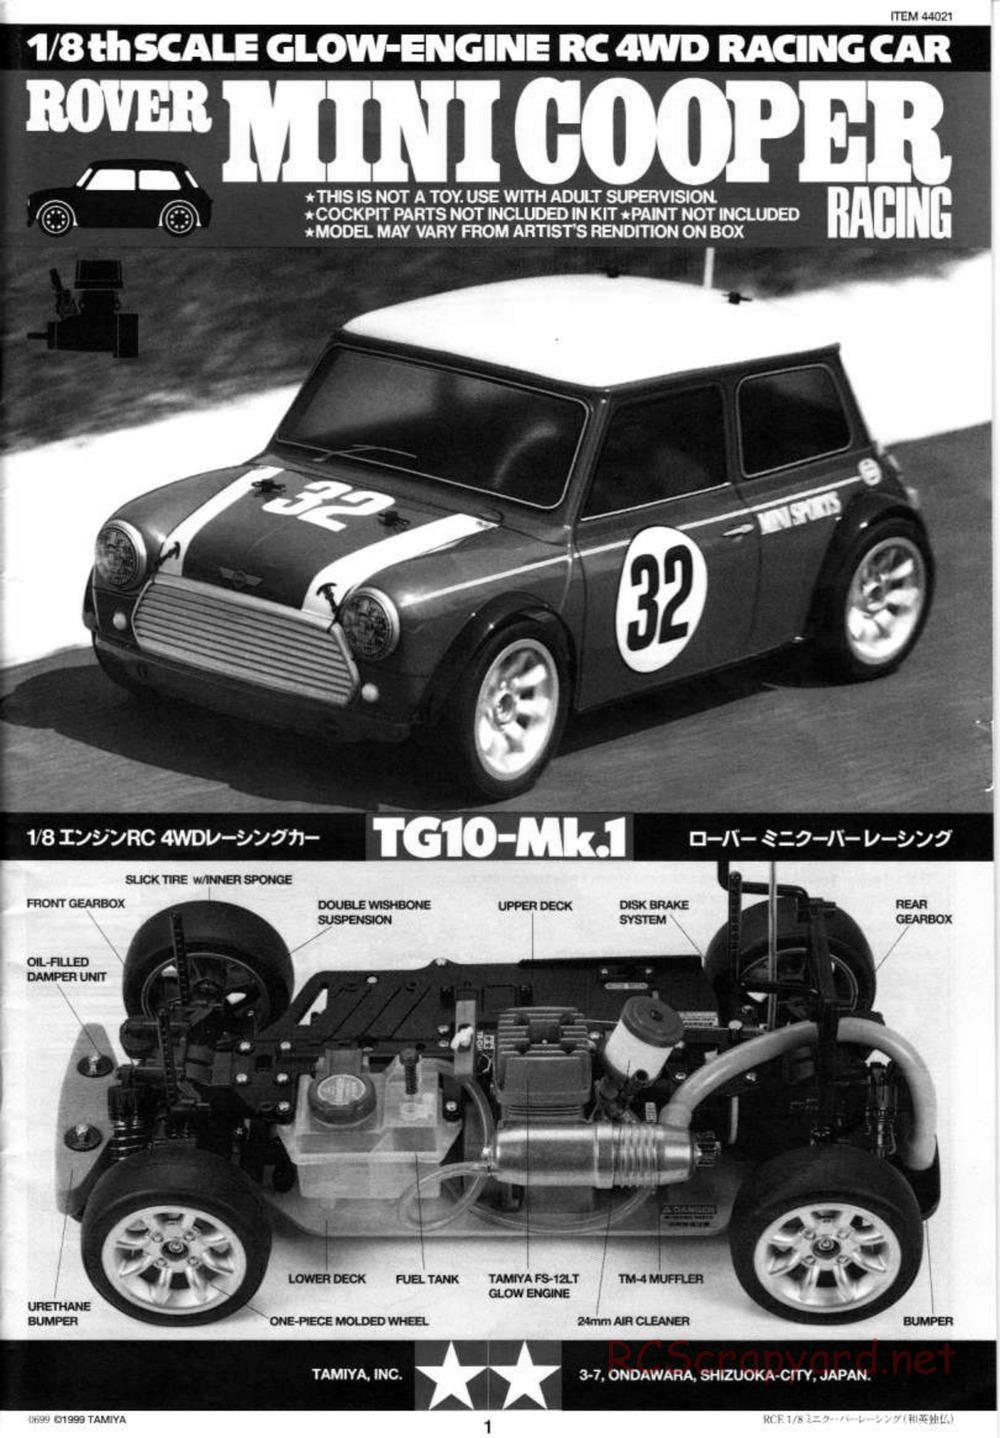 Tamiya - Rover Mini Cooper Racing - TG10 Mk.1 Chassis - Manual - Page 1